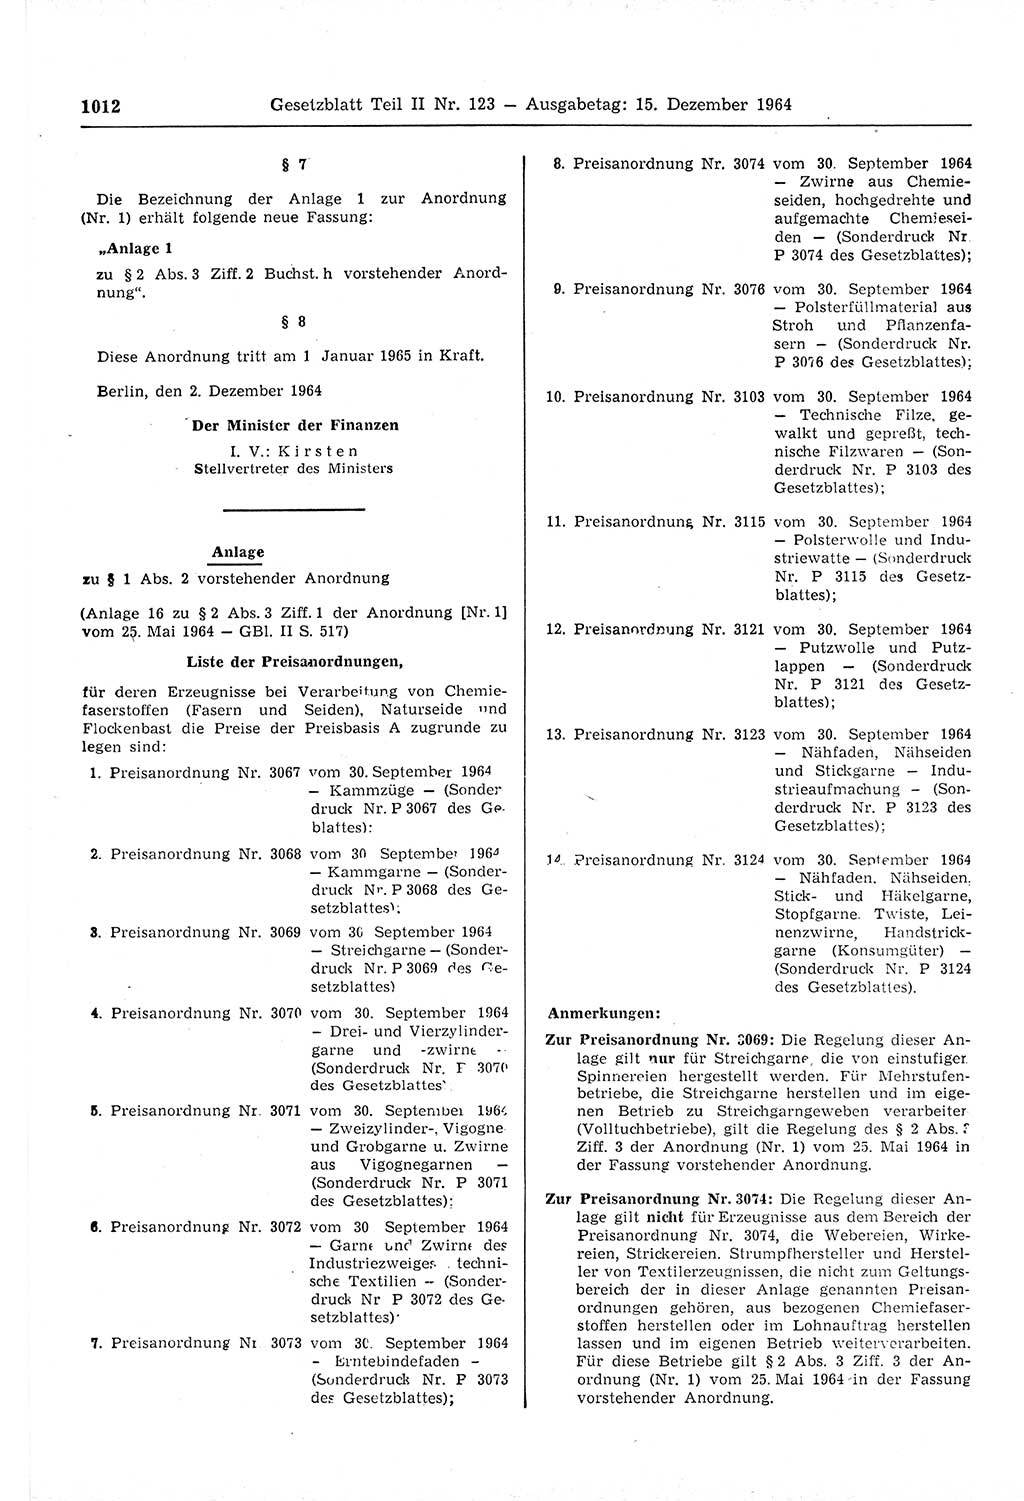 Gesetzblatt (GBl.) der Deutschen Demokratischen Republik (DDR) Teil ⅠⅠ 1964, Seite 1012 (GBl. DDR ⅠⅠ 1964, S. 1012)